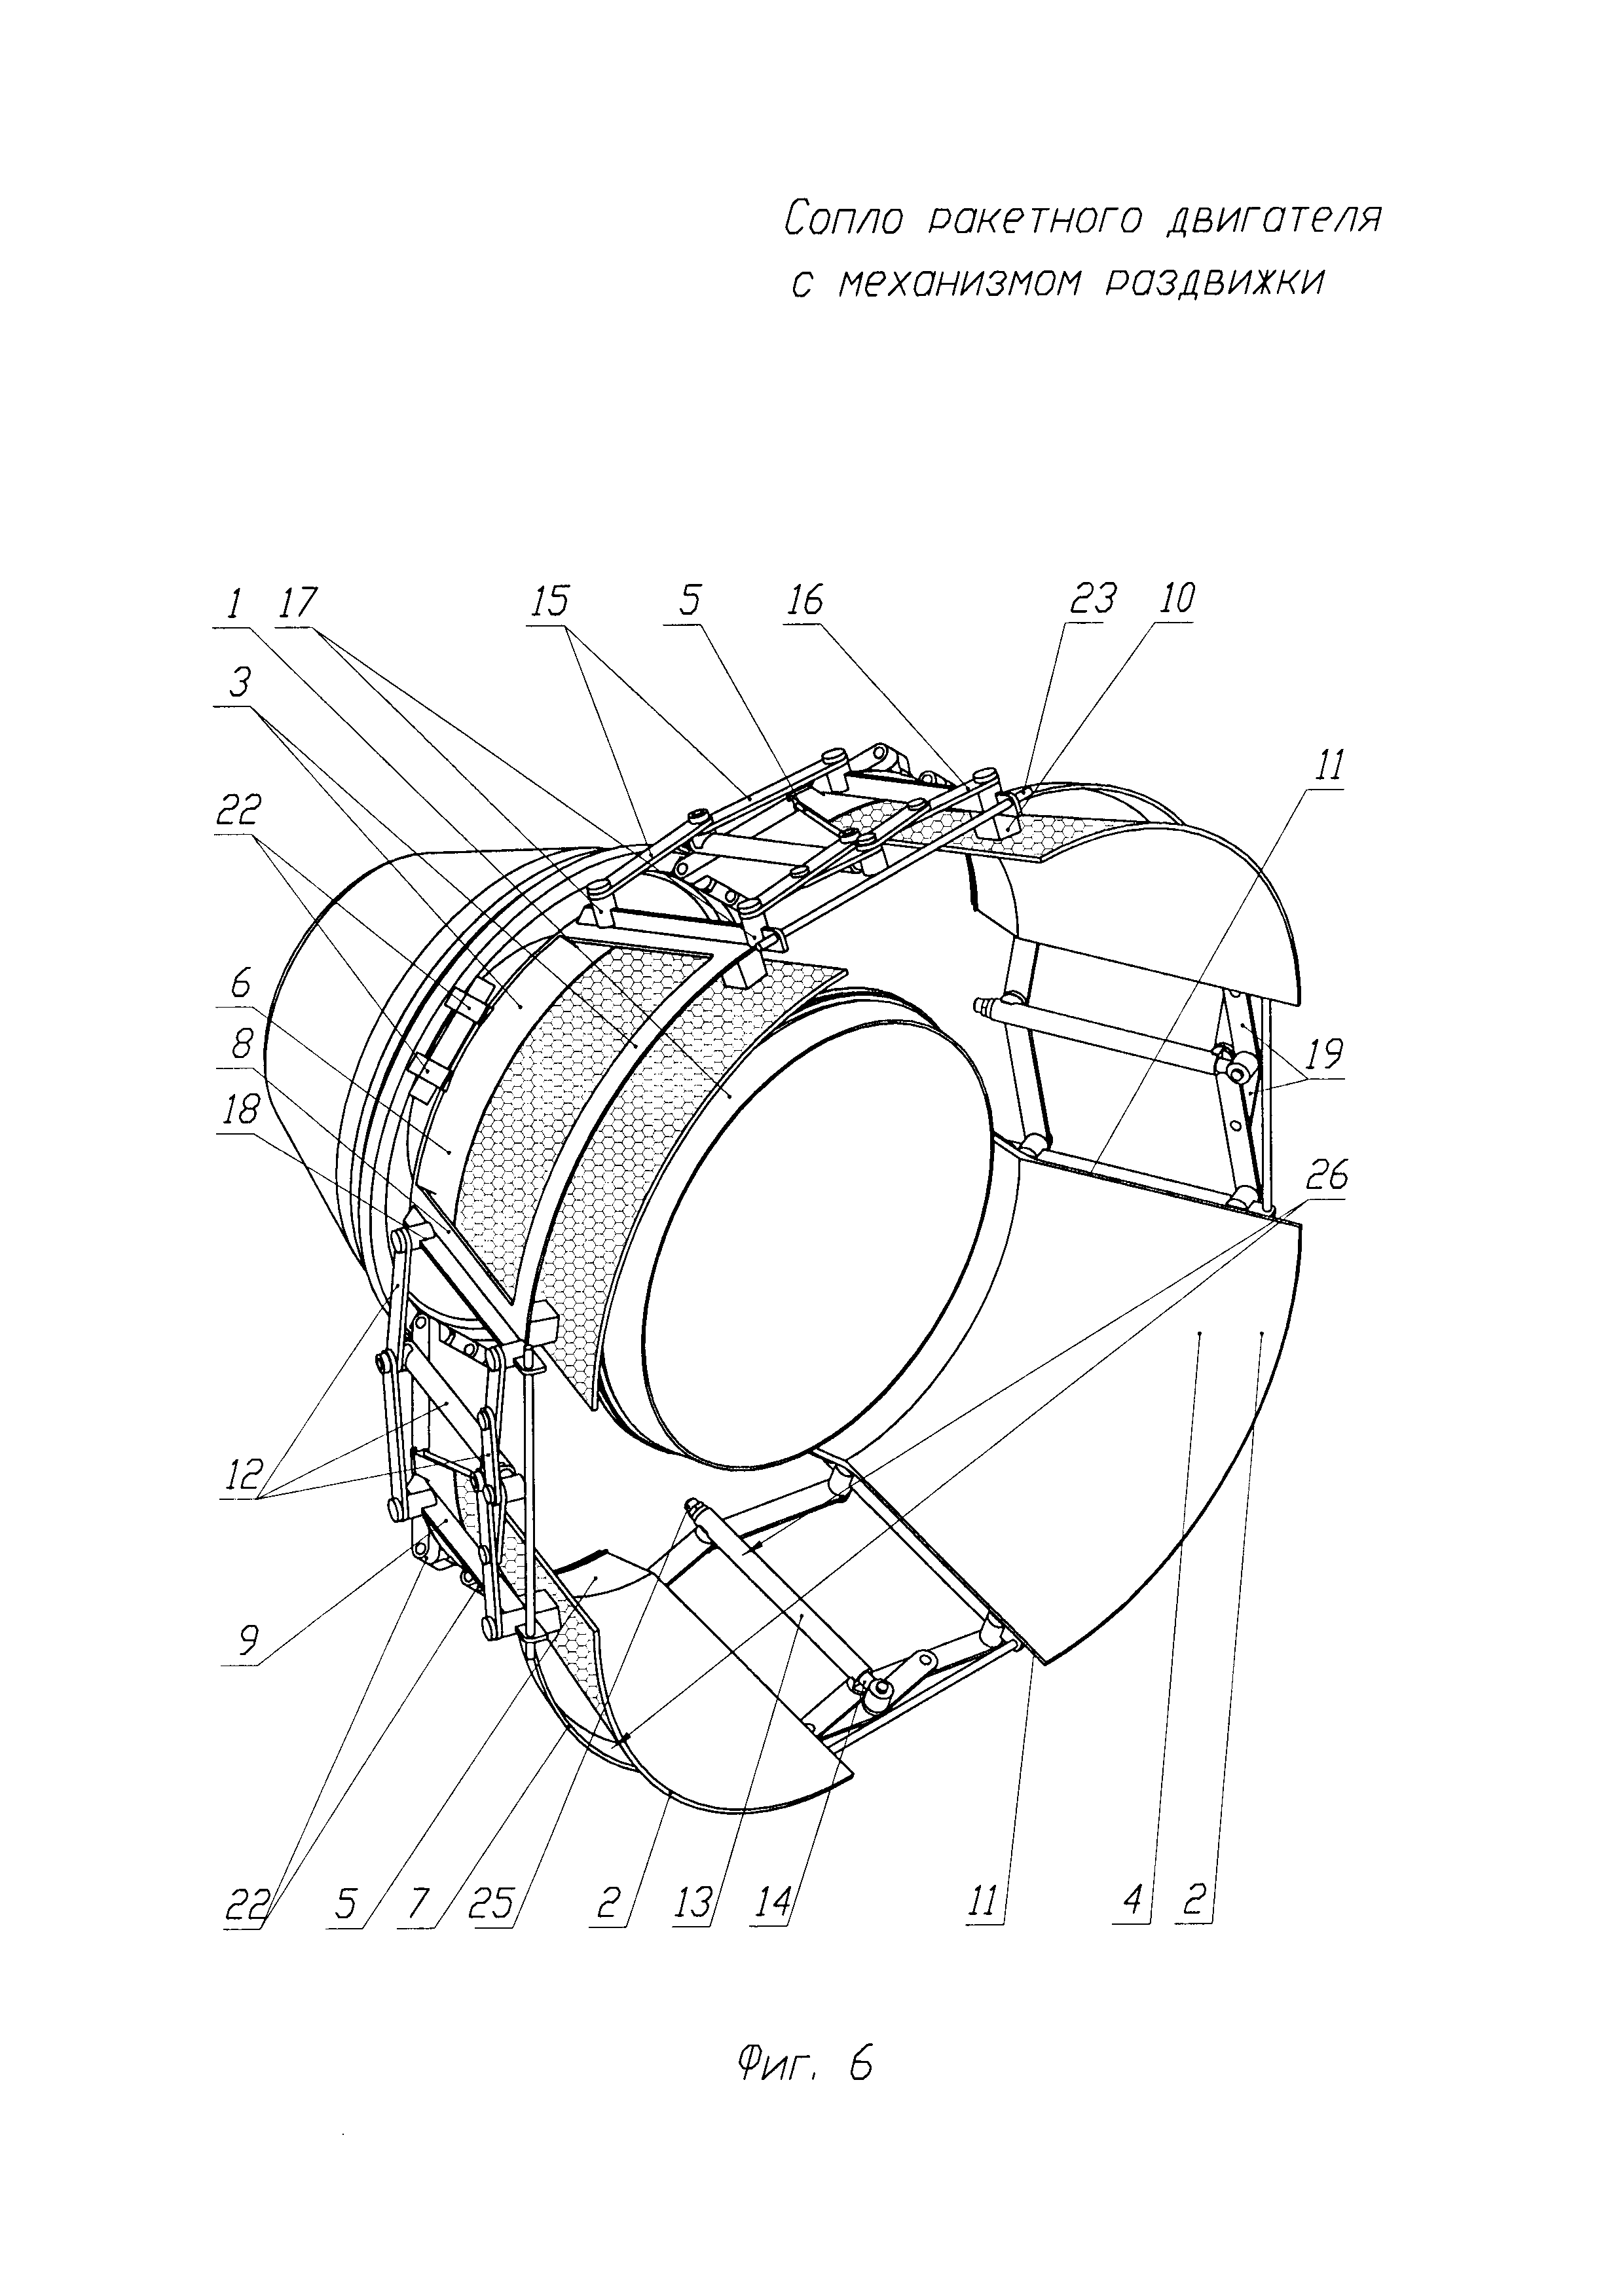 Сопло ракетного двигателя с механизмом раздвижки